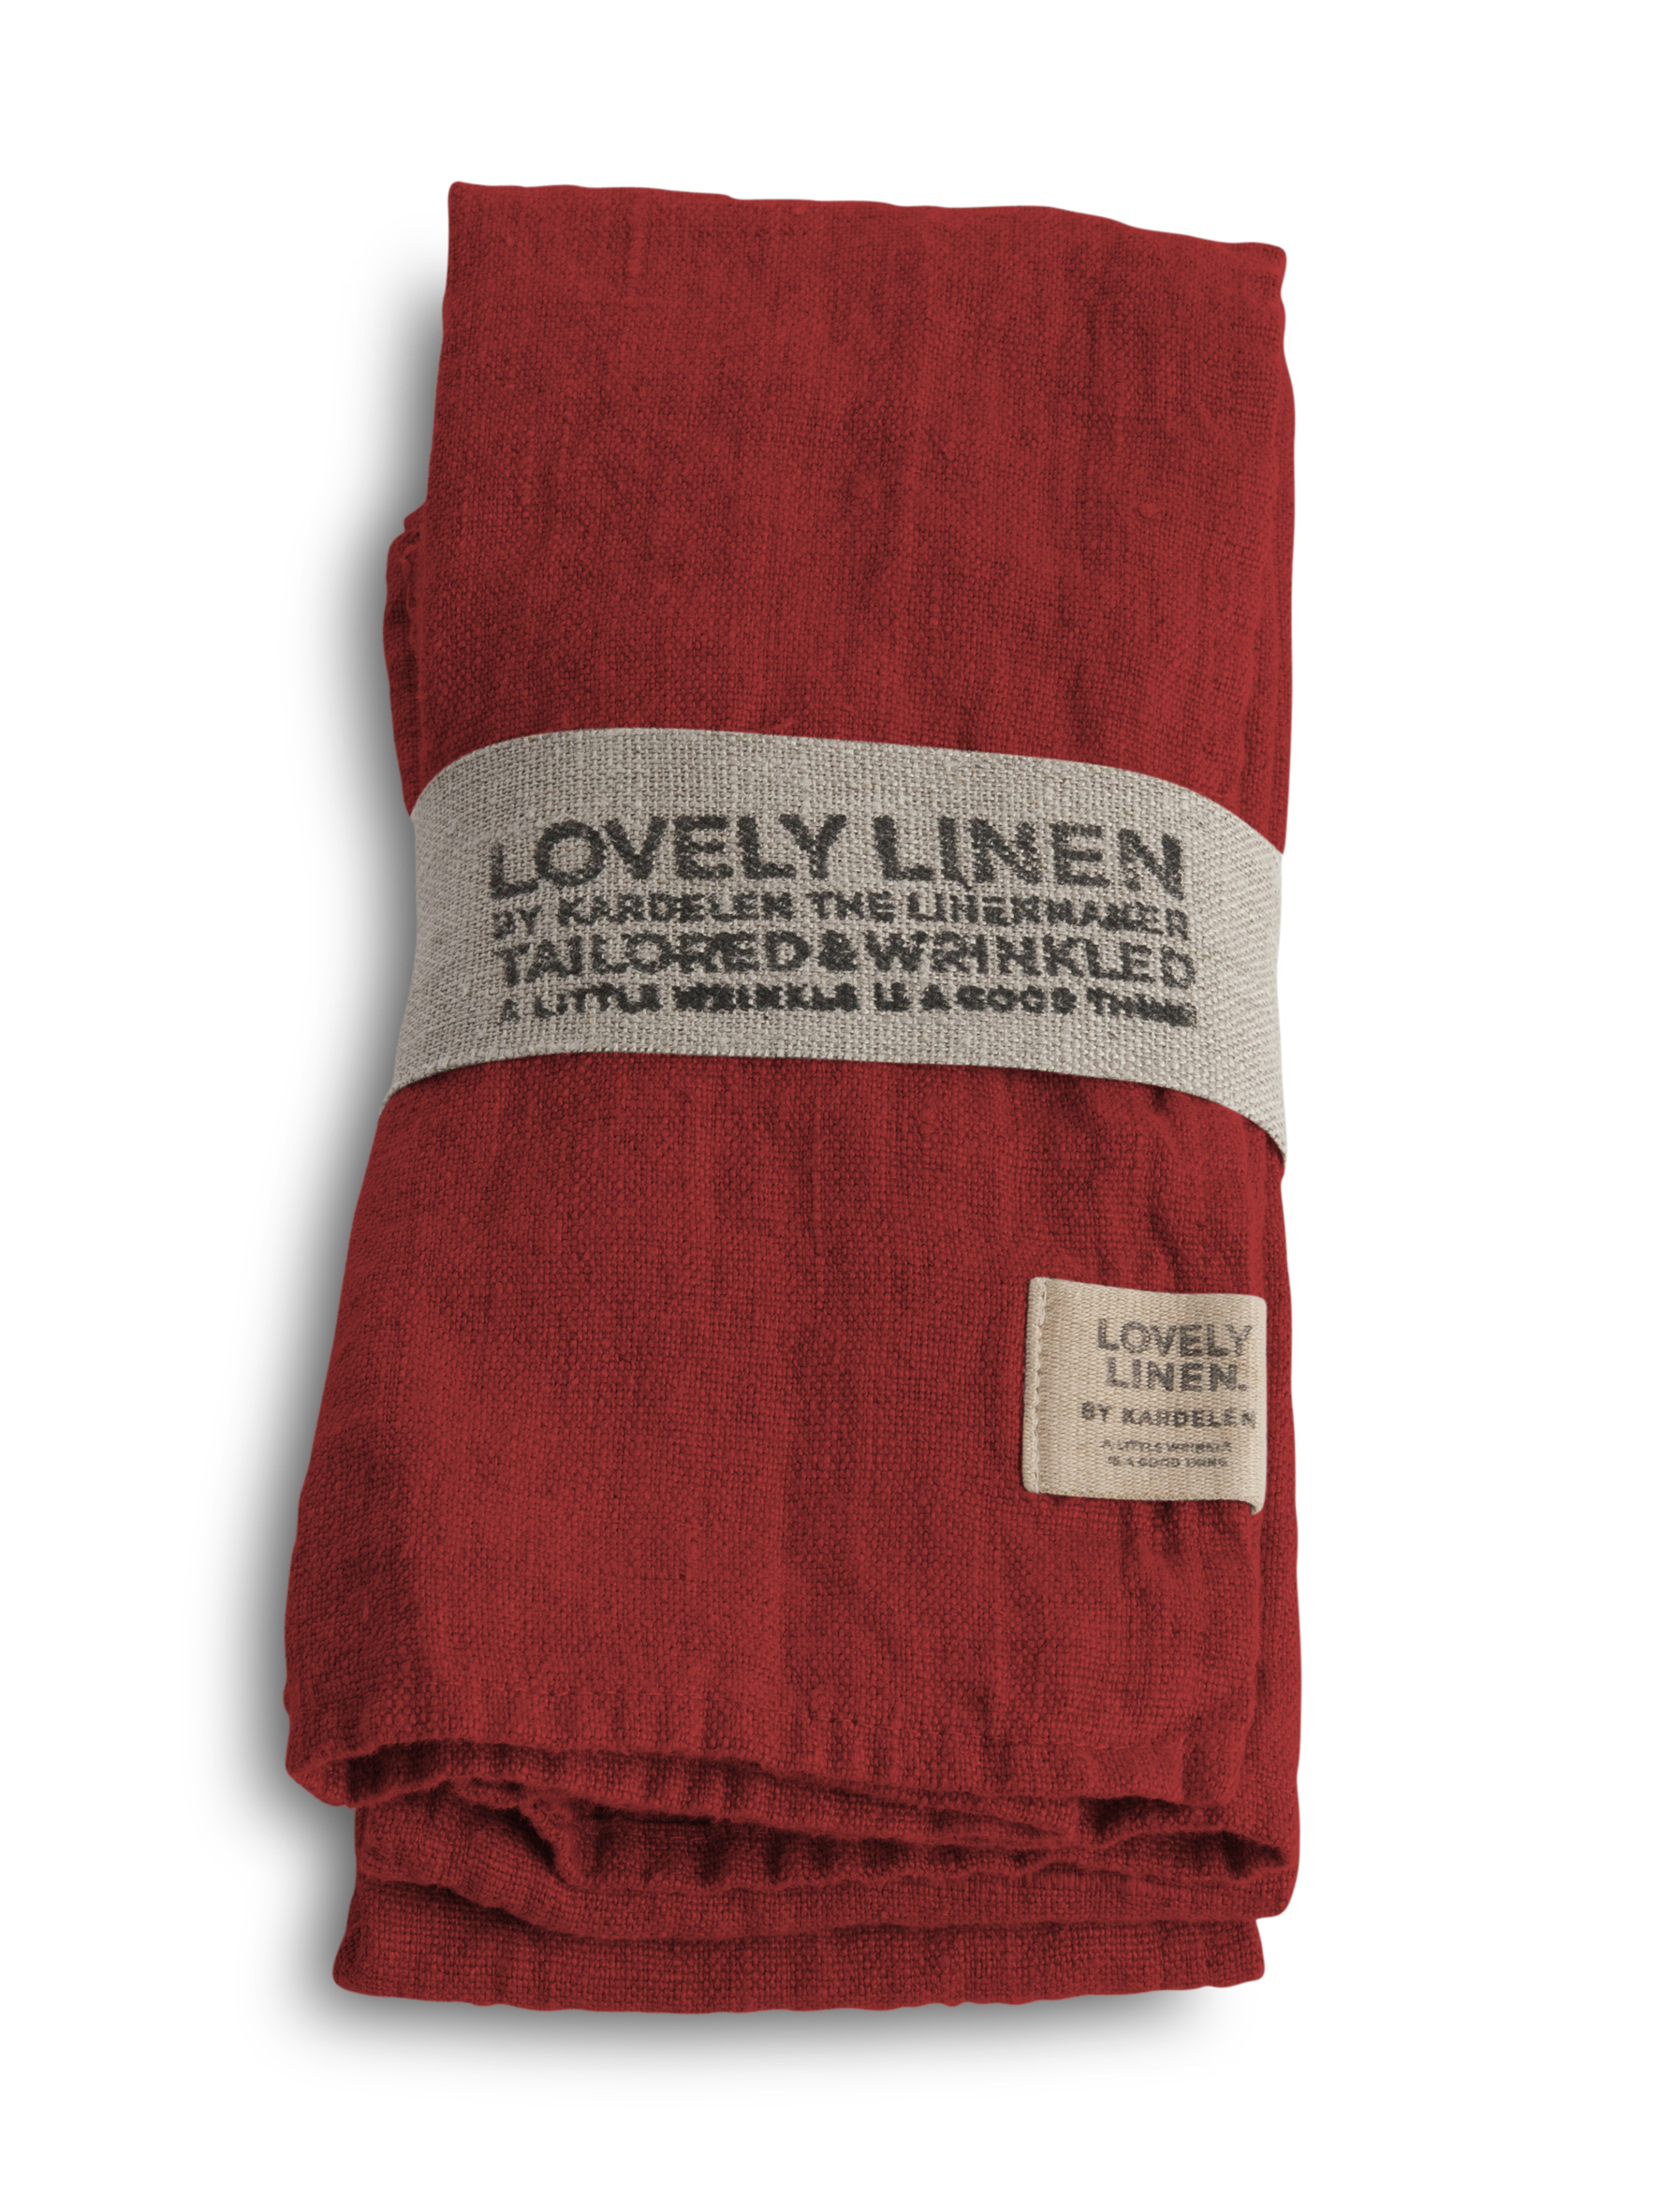 Lovely Linen 100% European Linen Table Napkin in Real Red